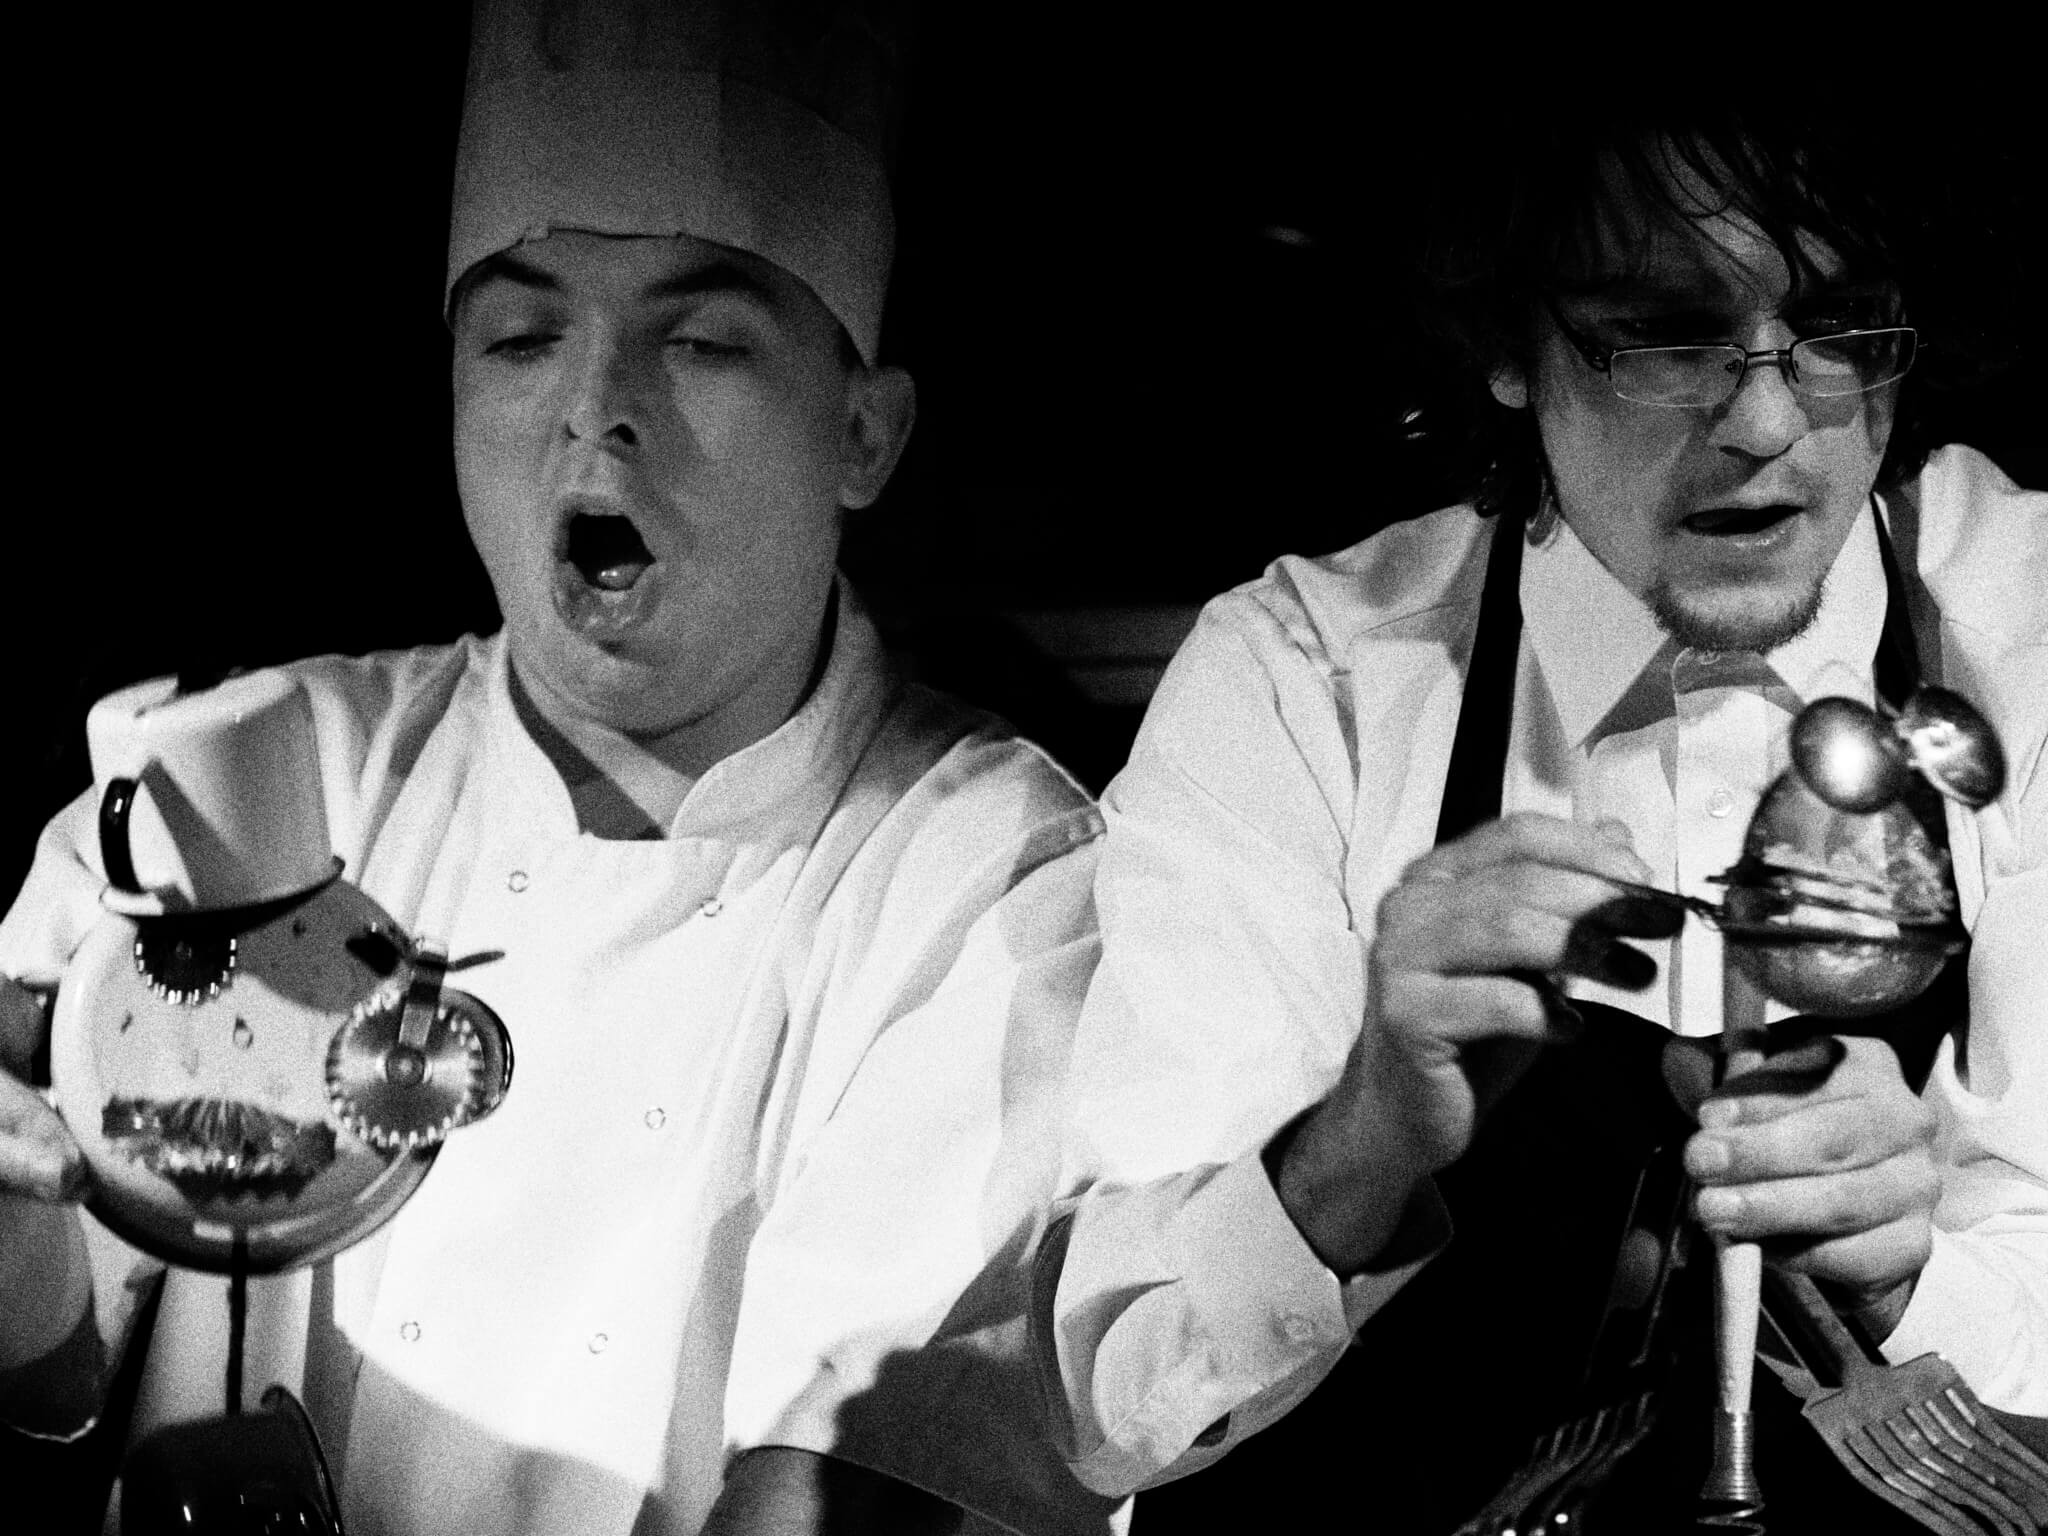 Zdjęcie ze spektaklu Wielkie Ciasto. Przedstawia dwóch aktorów przebranych za kucharzy animujących lalki zrobione z garnków.